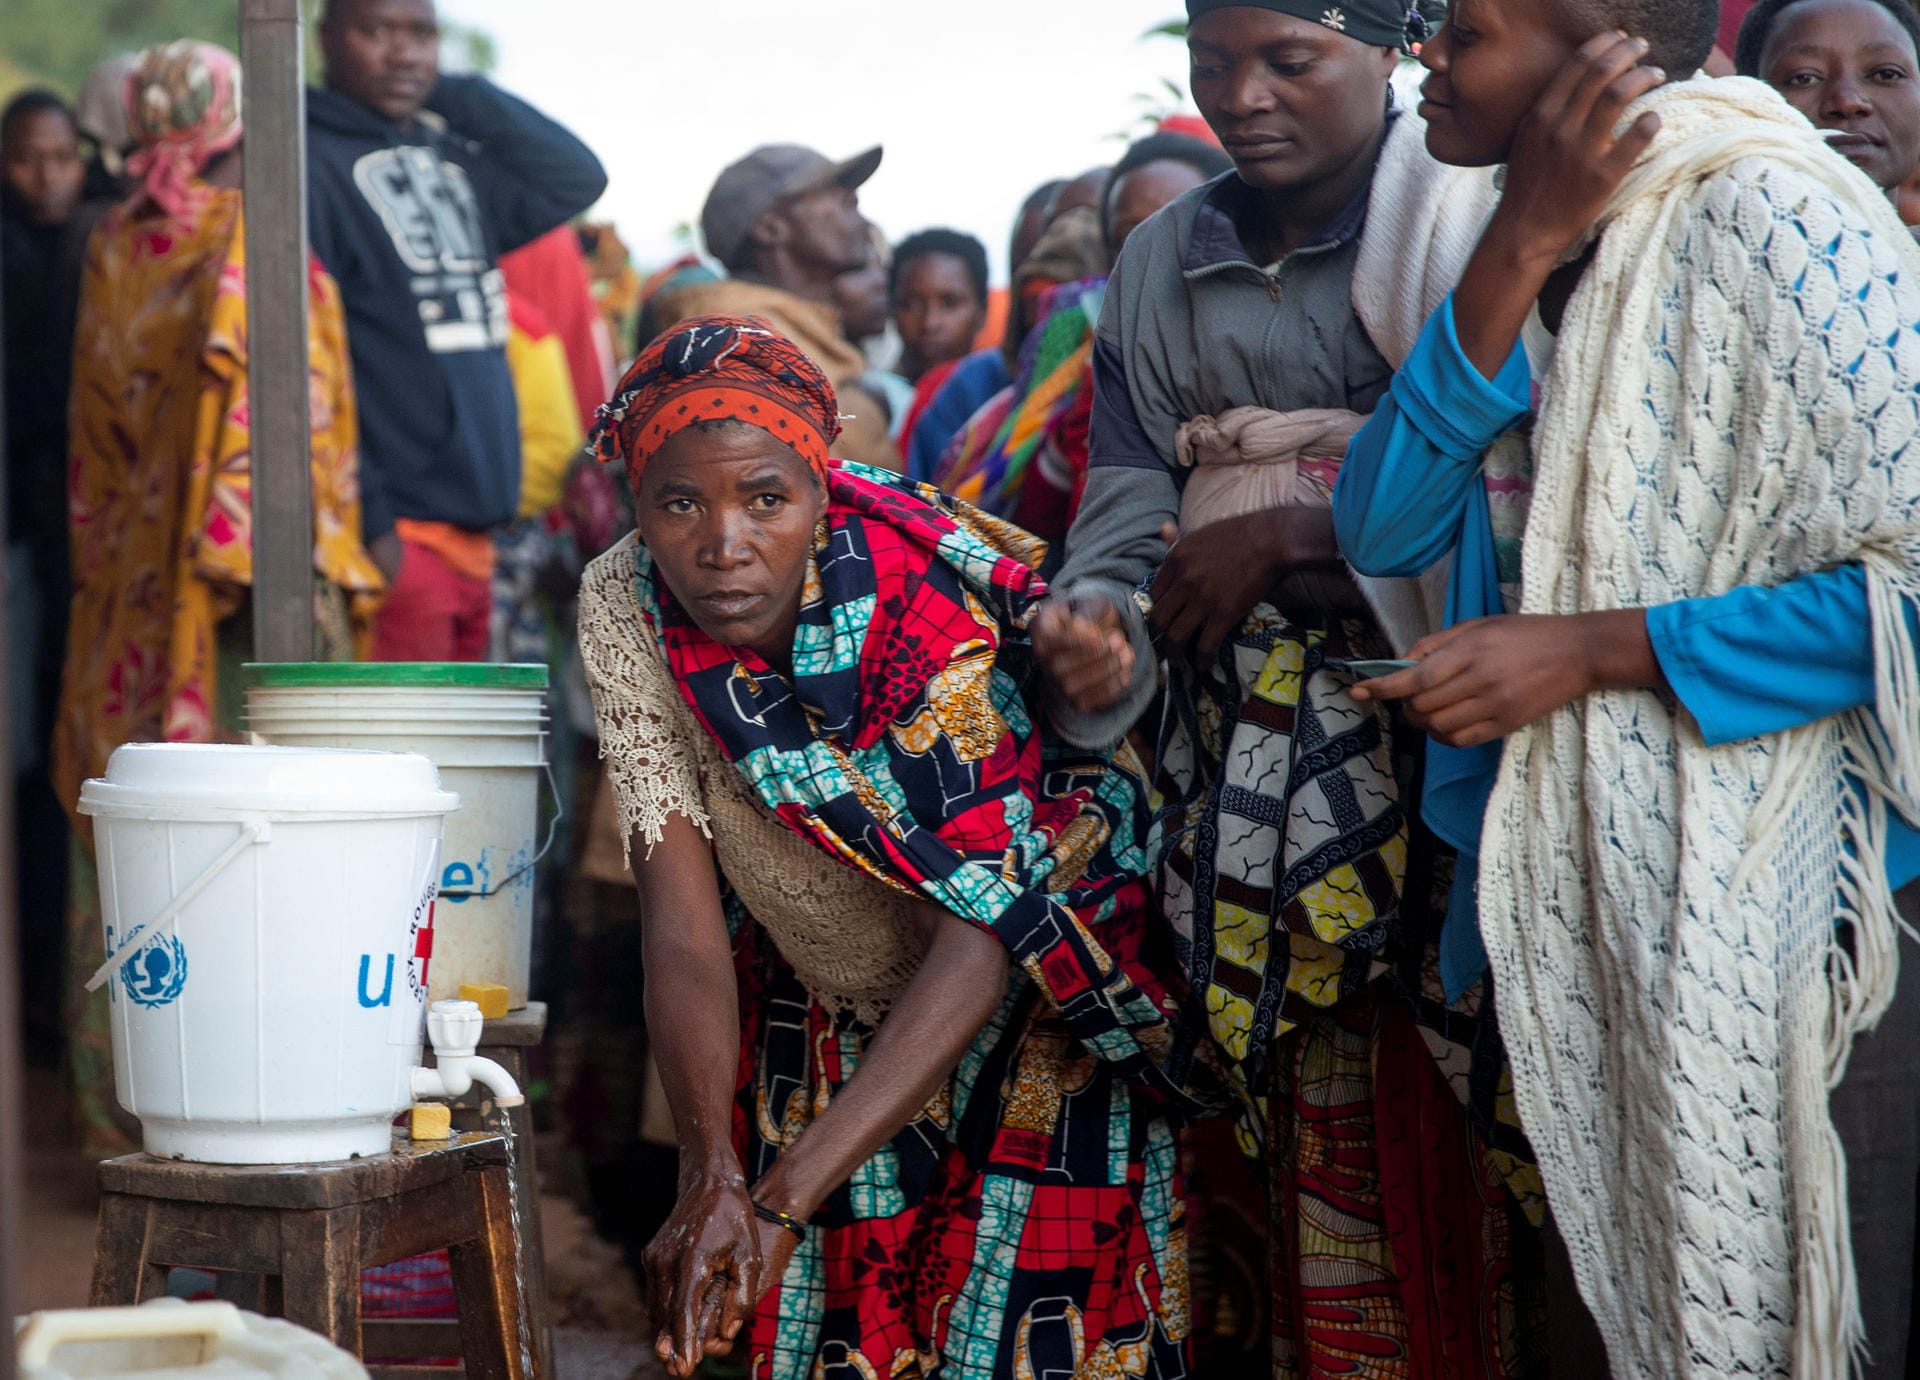 Platz 7: Burundi – Extremwetter, Unruhen, Flucht und Hunger: Die Ursachen für die unsichere Lage in Burundi sind besonders vielfältig. Knapp 90 Prozent der Bevölkerung leben von einer kleinbäuerlichen Landwirtschaft, doch der Klimawandel schädigt immer weitere Teile. Immer mehr Menschen müssen wegen Dürren, Überflutungen und Erdrutschen ihre Wohnorte verlassen. Jeder Sechste leidet unter Hunger – noch mehr sind auf humanitäre Hilfe angewiesen.